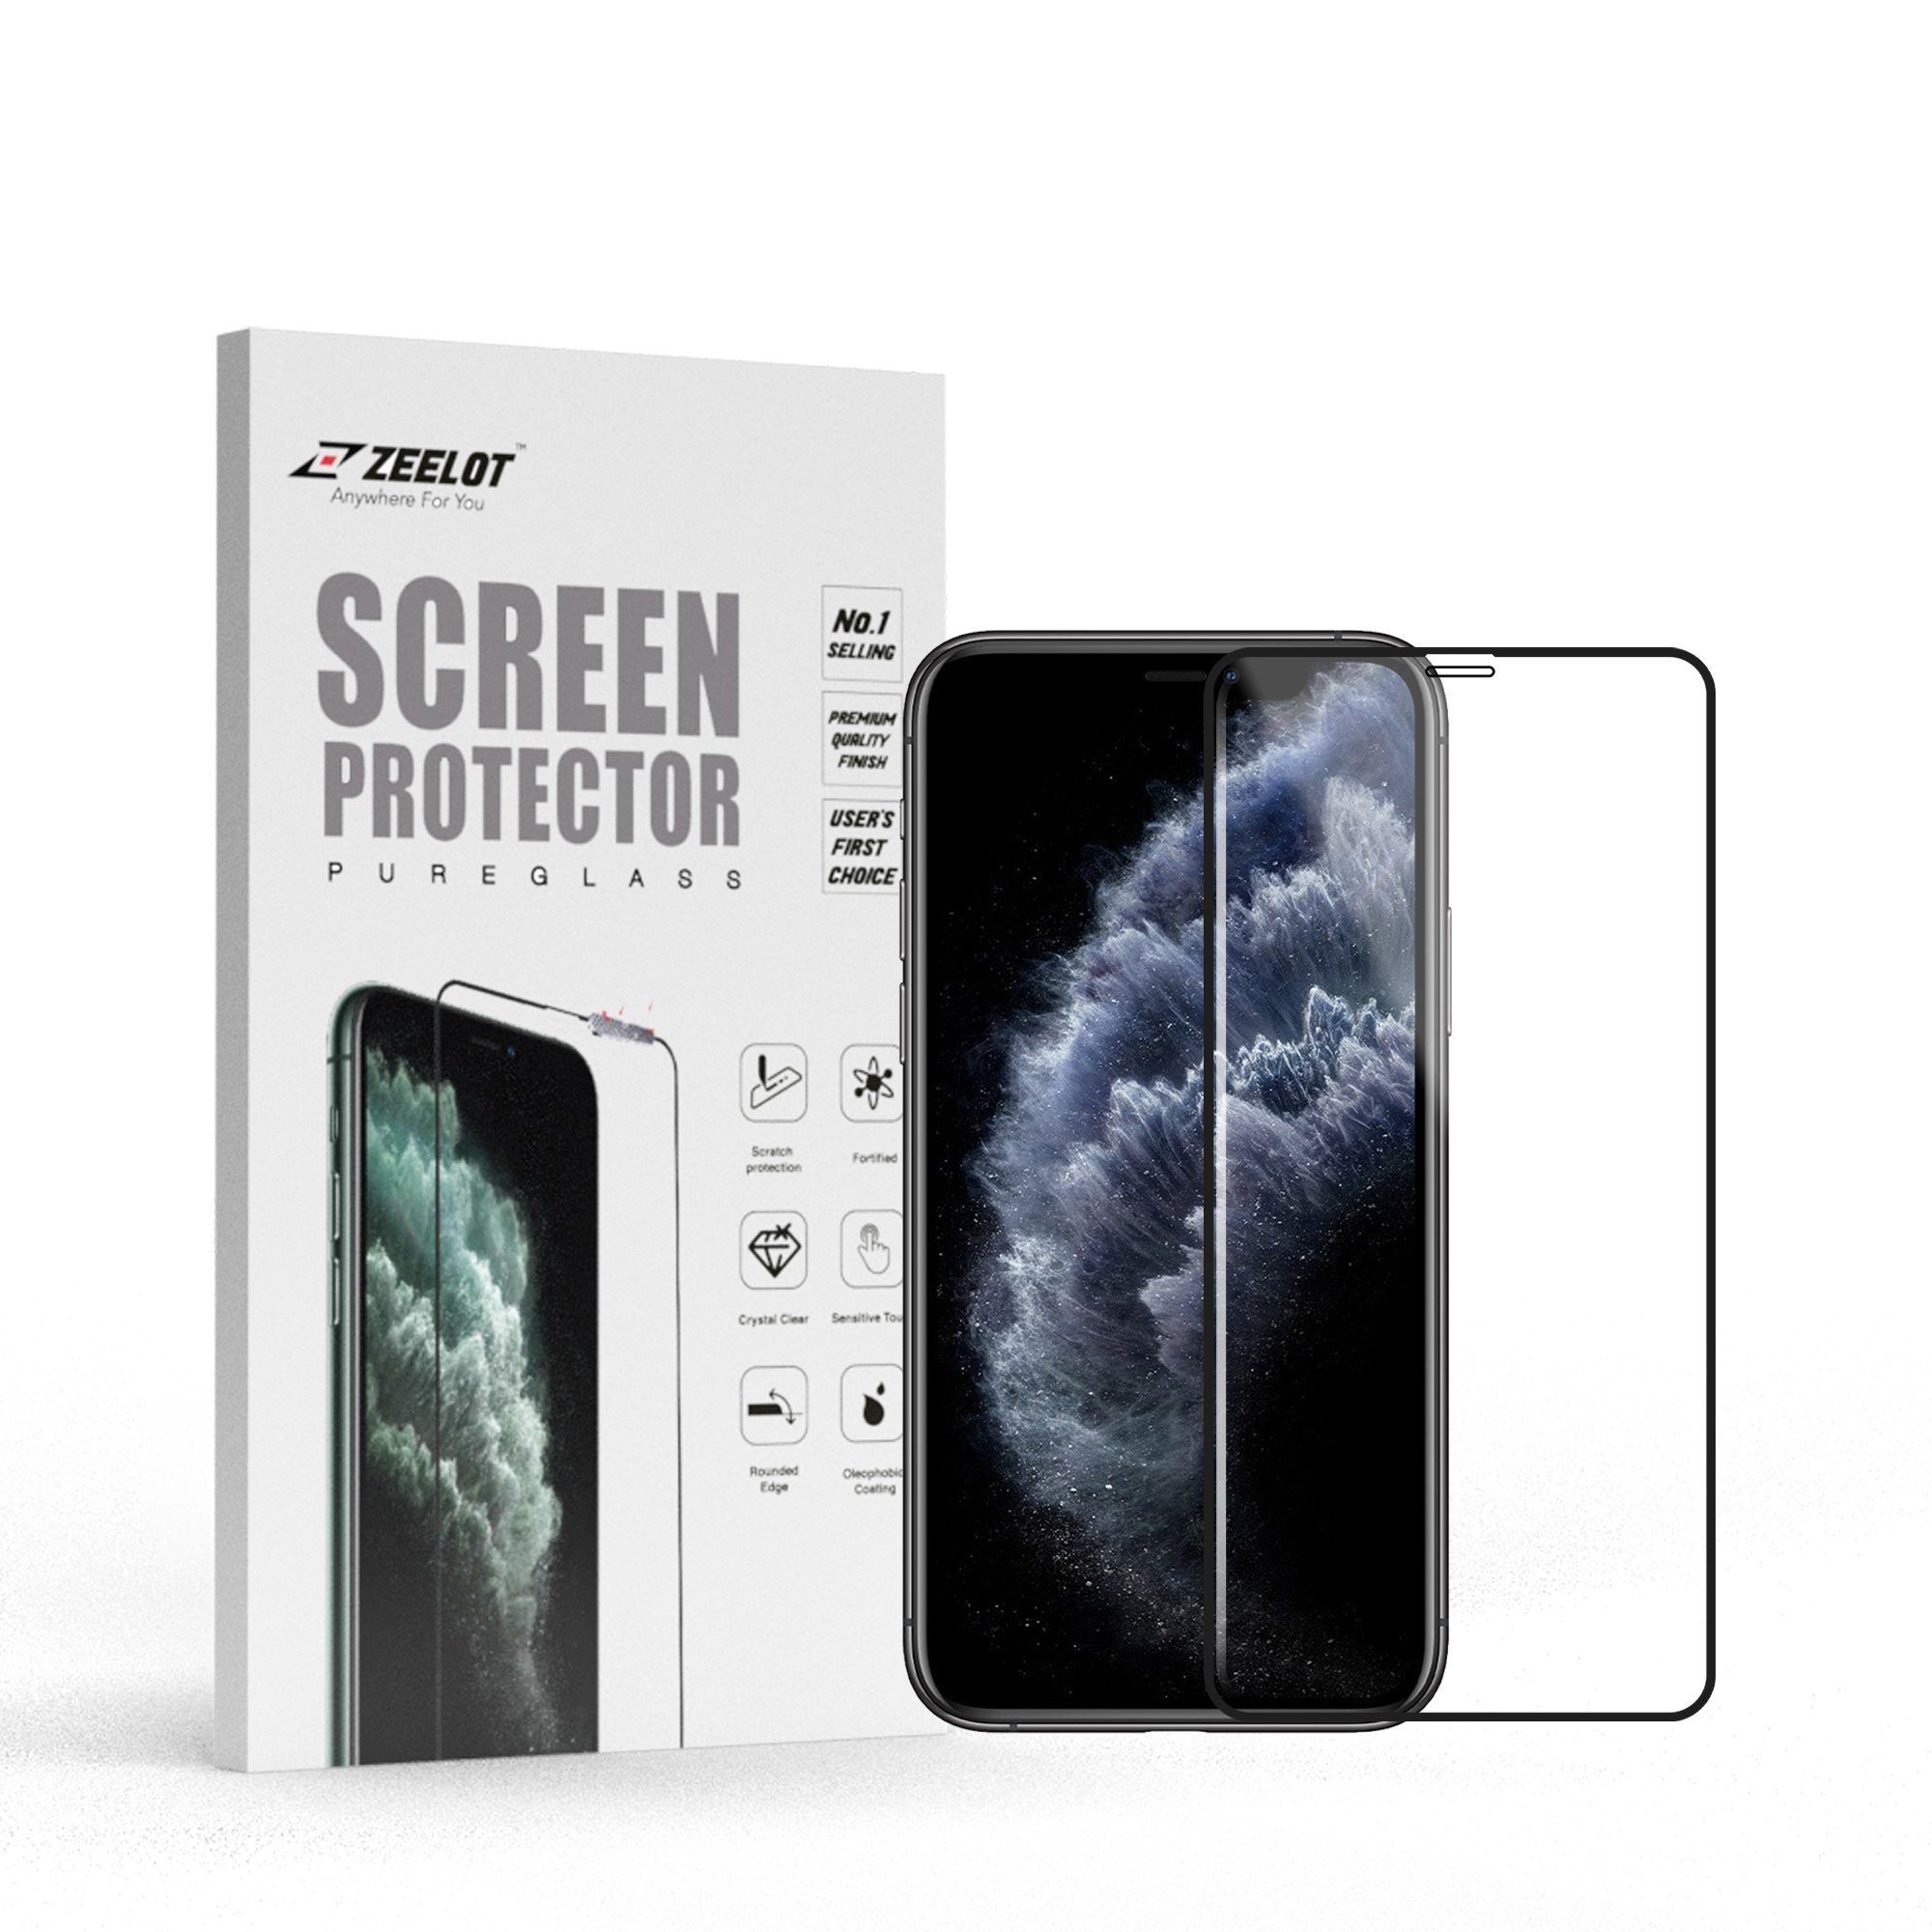 ZEELOT PureGlass 2.75D Tempered Glass Screen Protector for iPhone 11 Pro 5.8" (2019), Clear Tempered Glass ZEELOT 